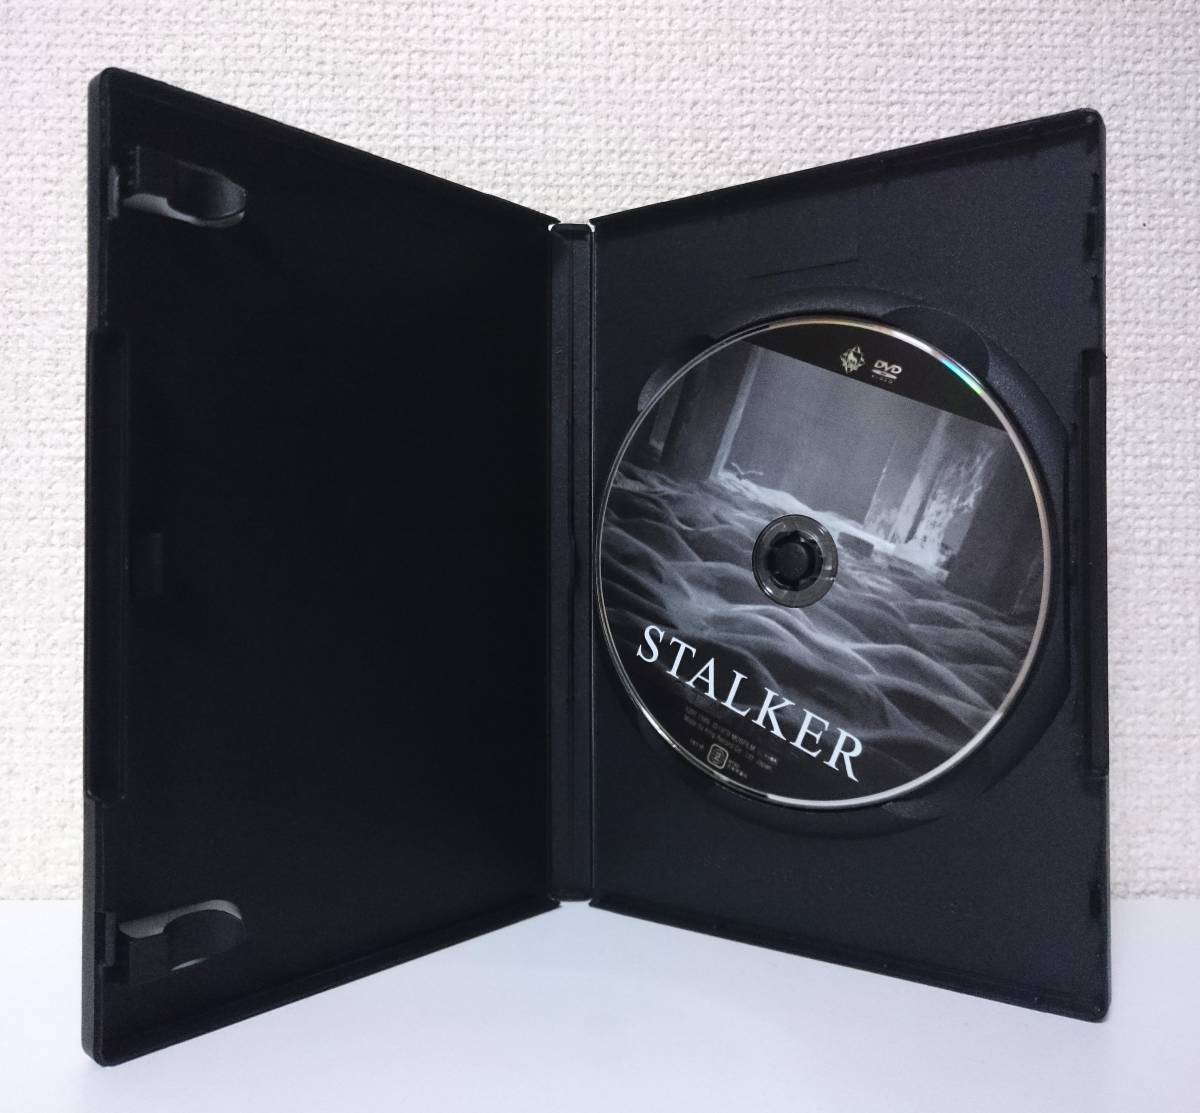 ストーカー / STALKER　国内版DVD レンタル使用品　1979年 アンドレイ・タルコフスキー　ストルガツキー兄弟　70年代 SF映画_画像3